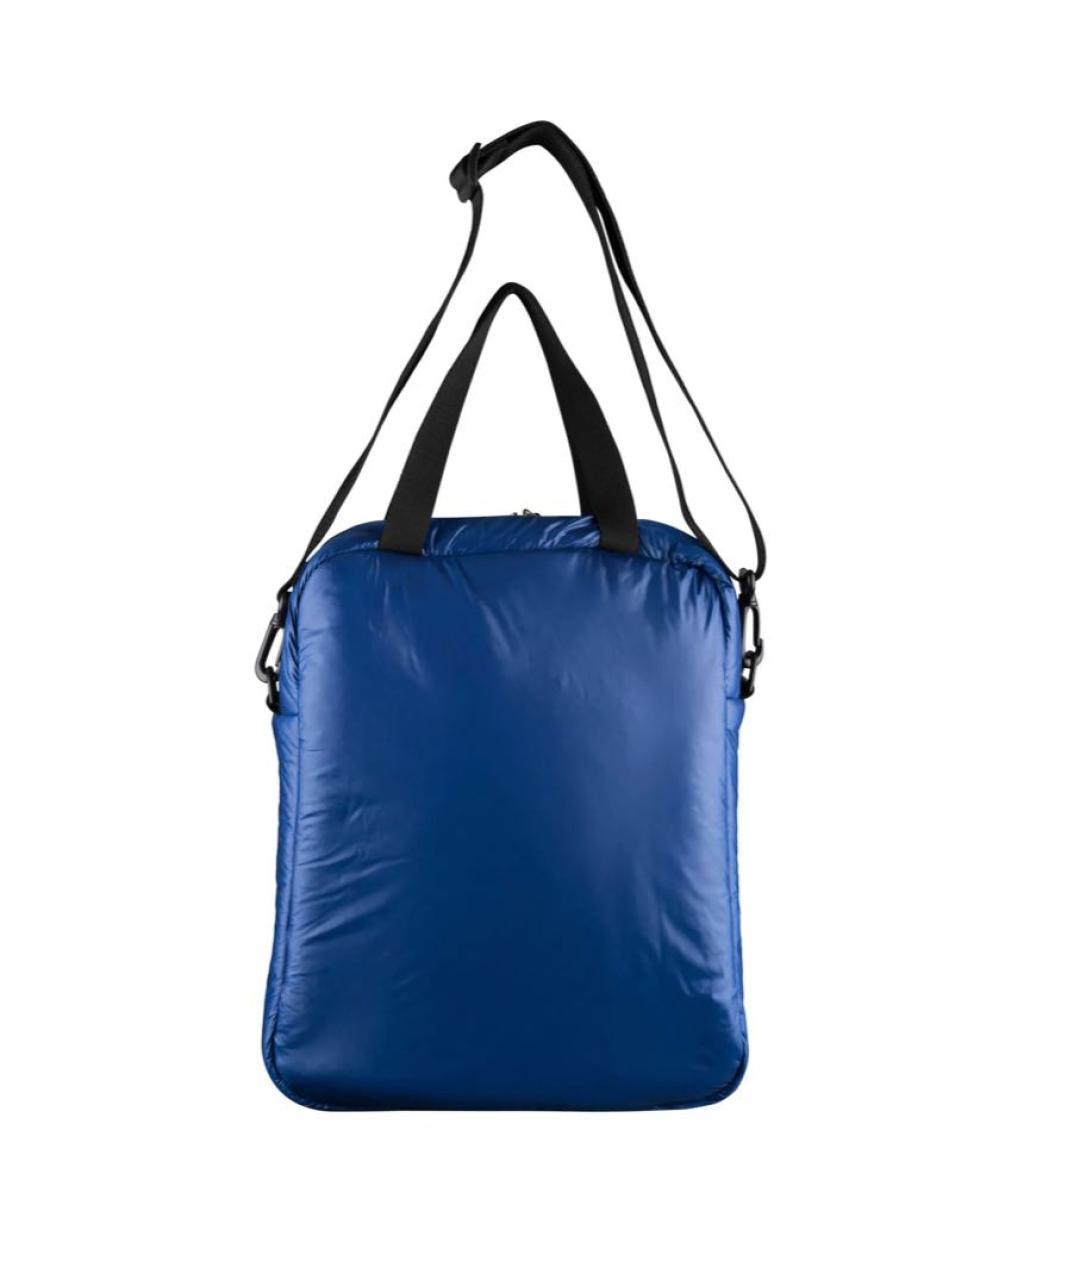 A.P.C. Синяя синтетическая сумка на плечо, фото 2